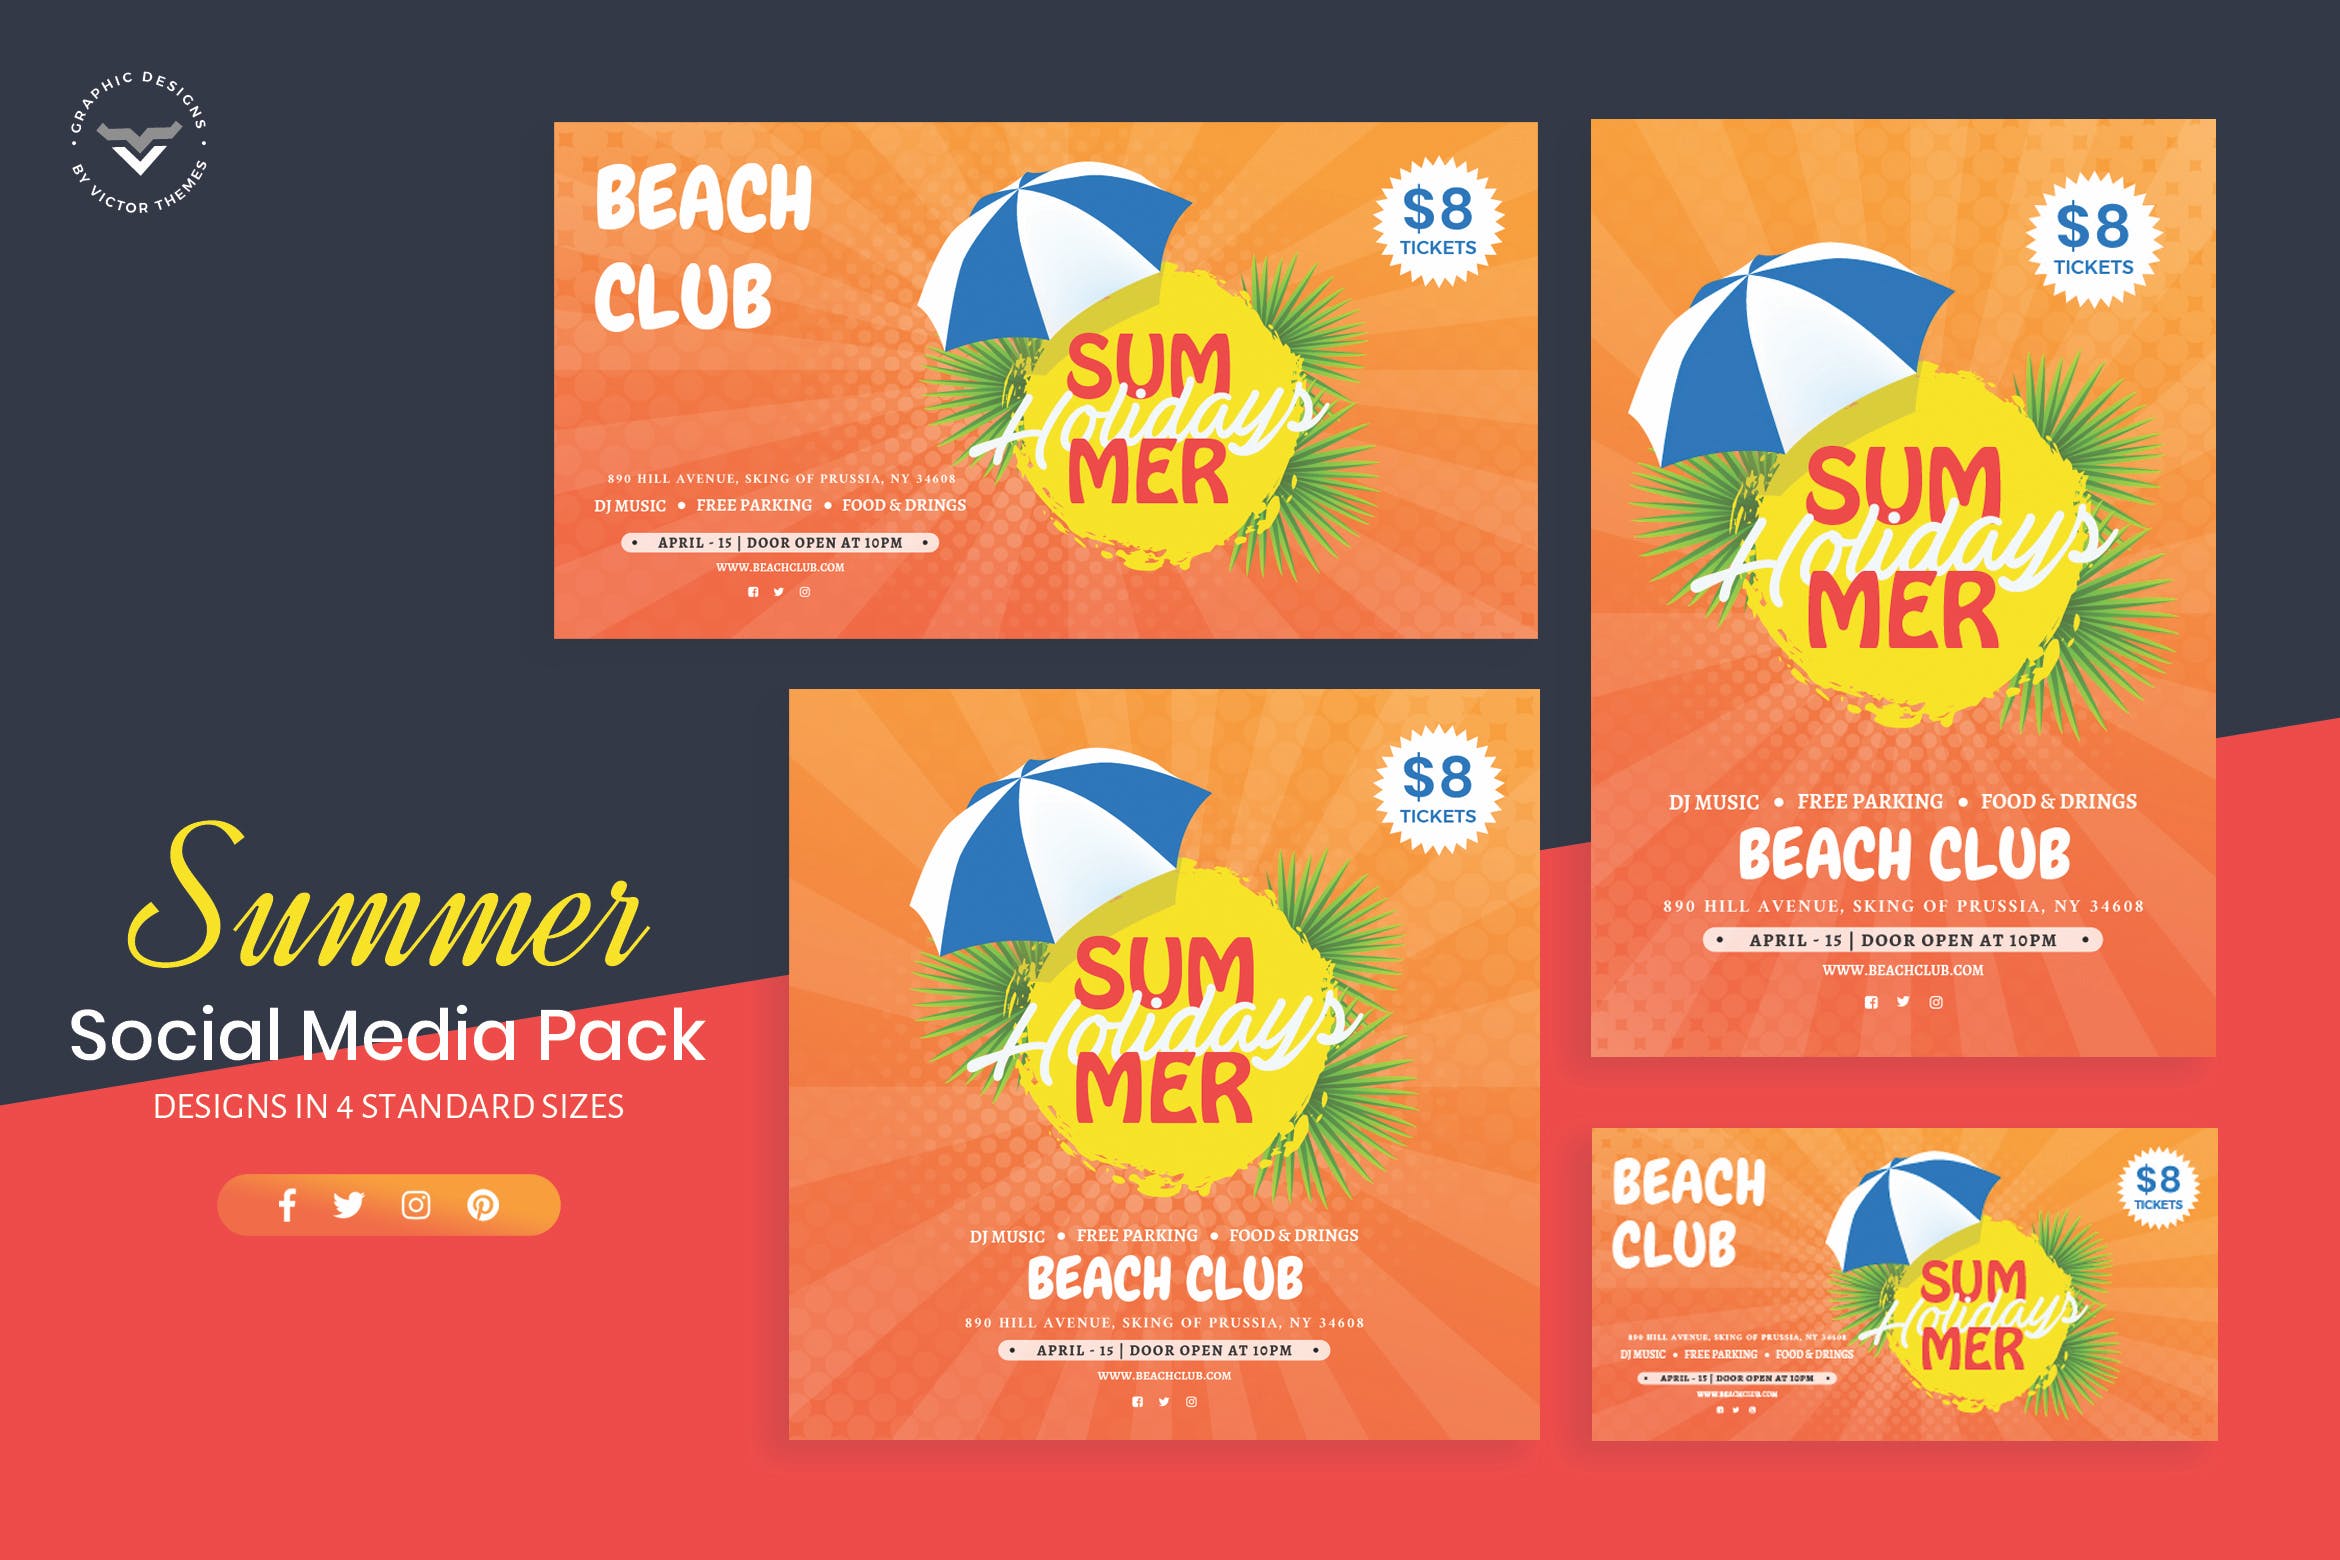 夏日主题社交媒体广告设计模板素材库精选 Summer Social Media Template插图